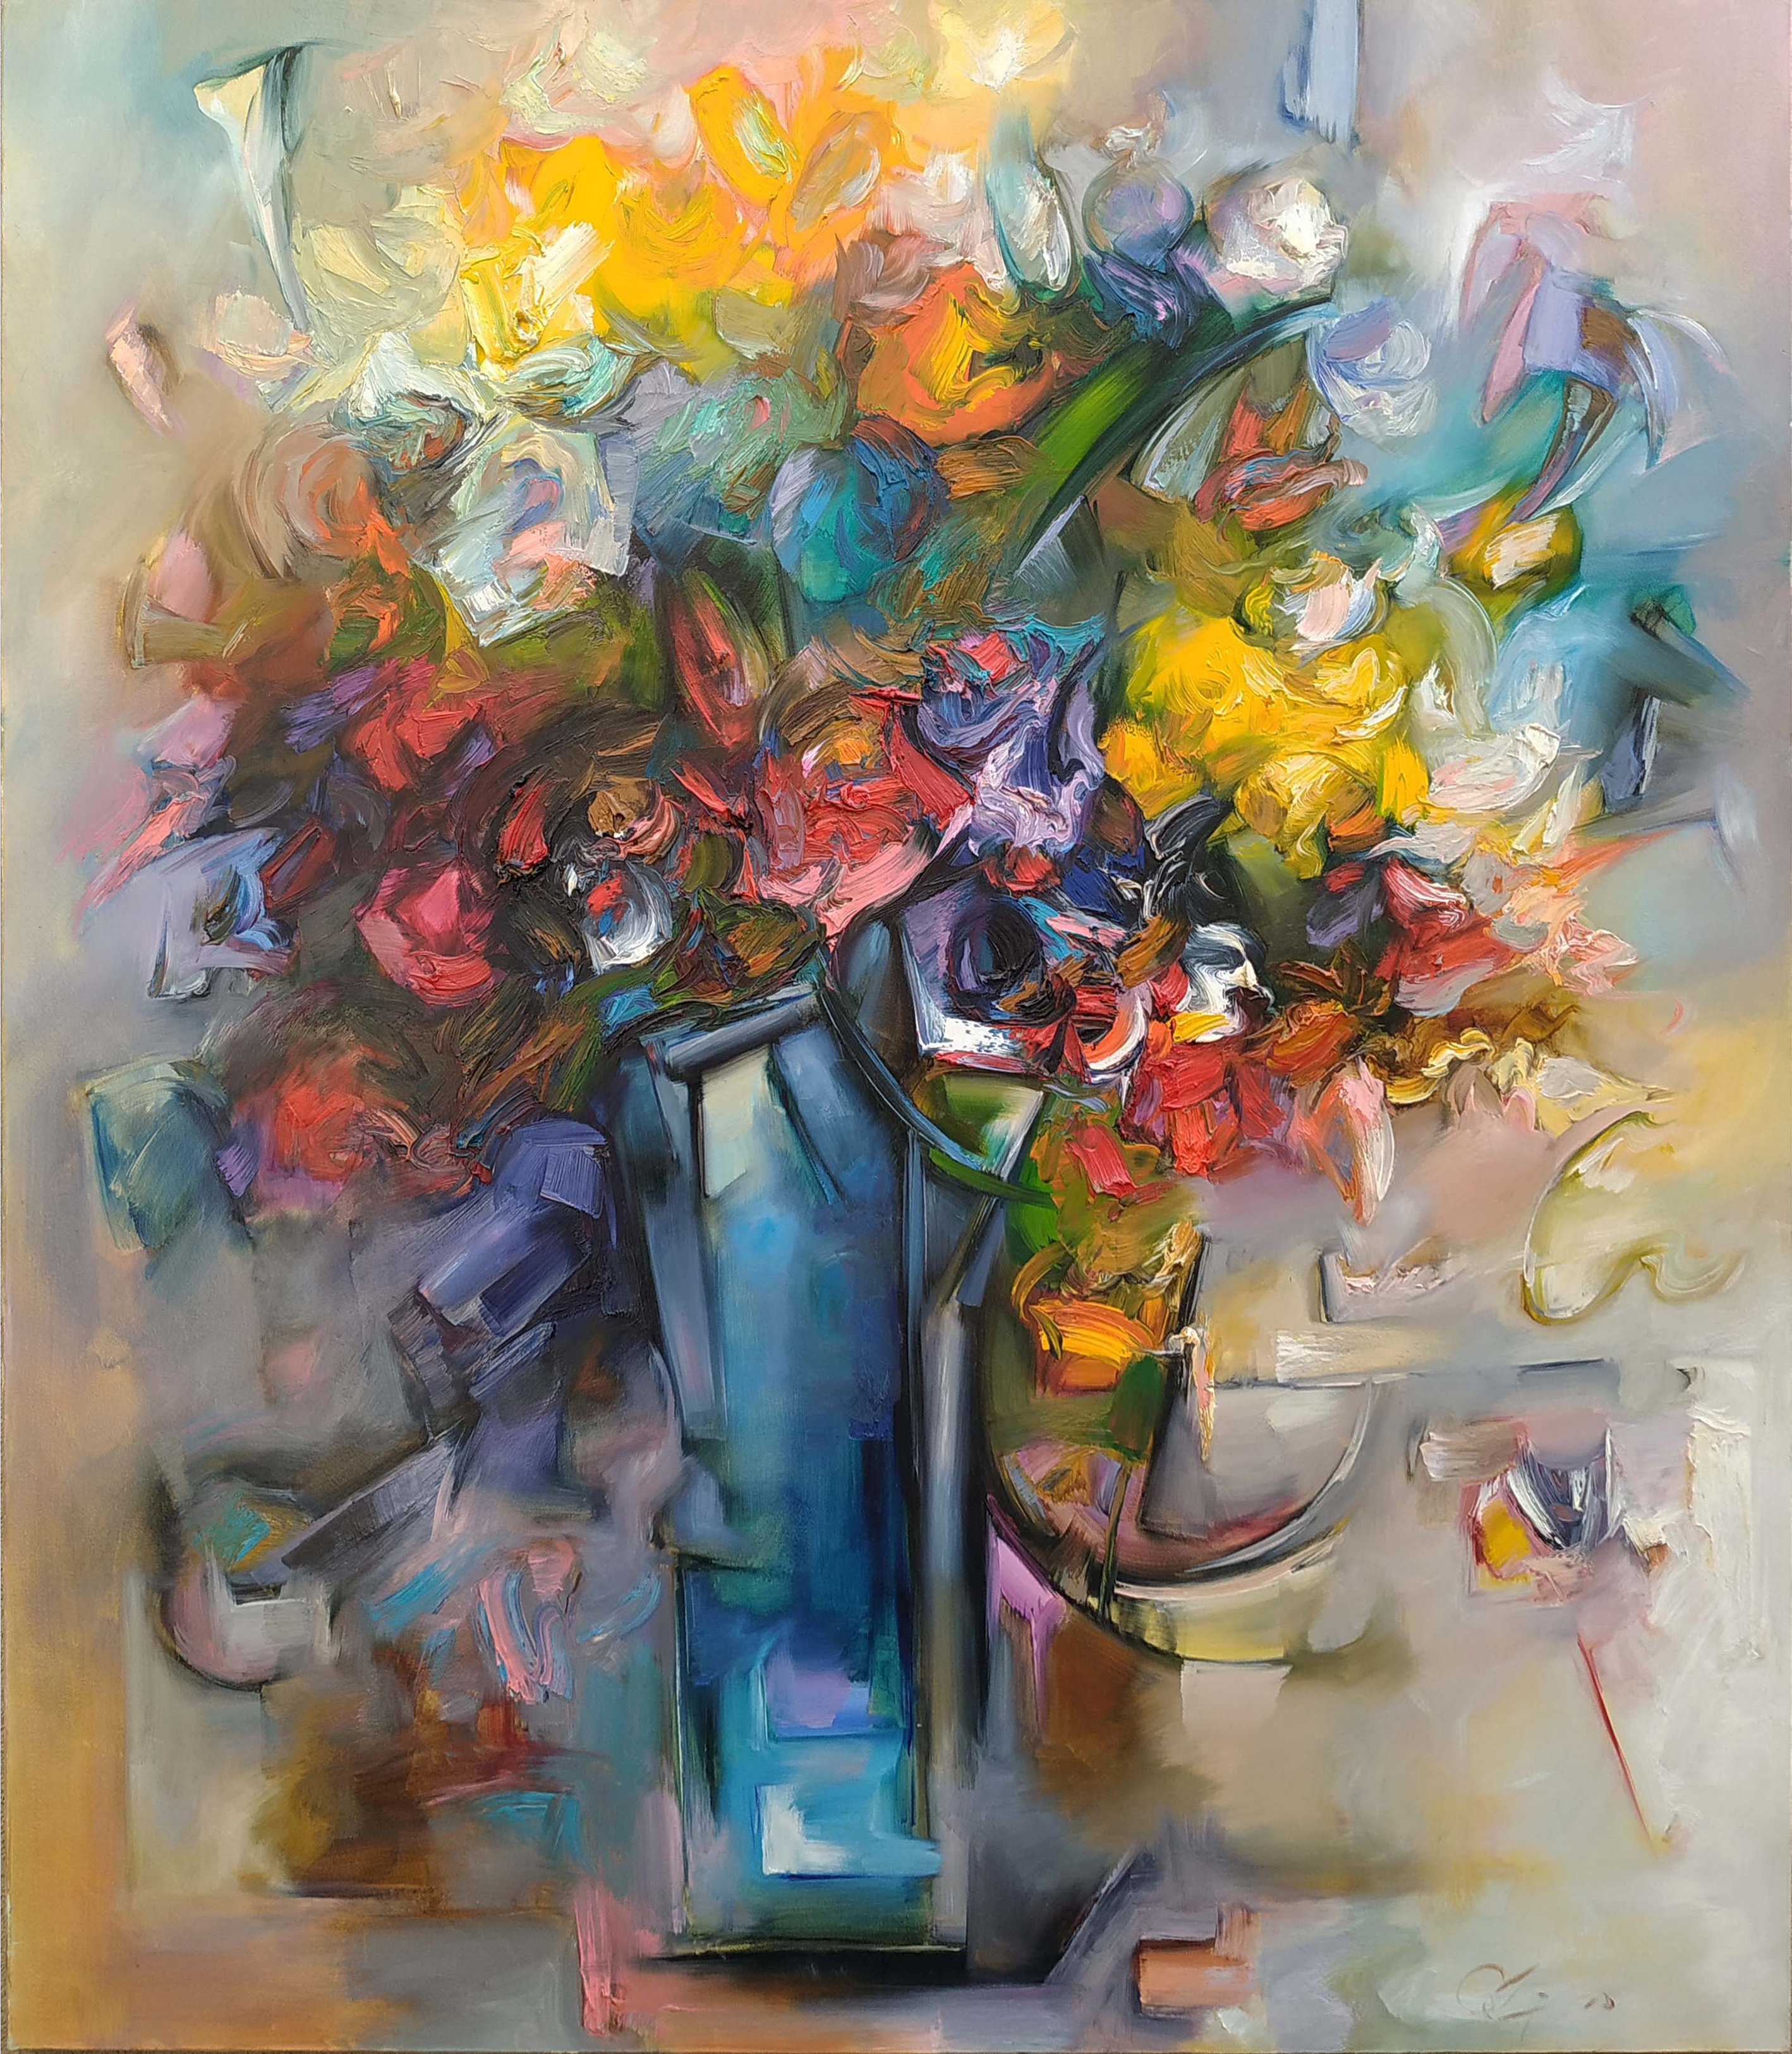 Kwiaty w błękitnym wazonie — Zdzisław Constantin Majrowski-Meyro